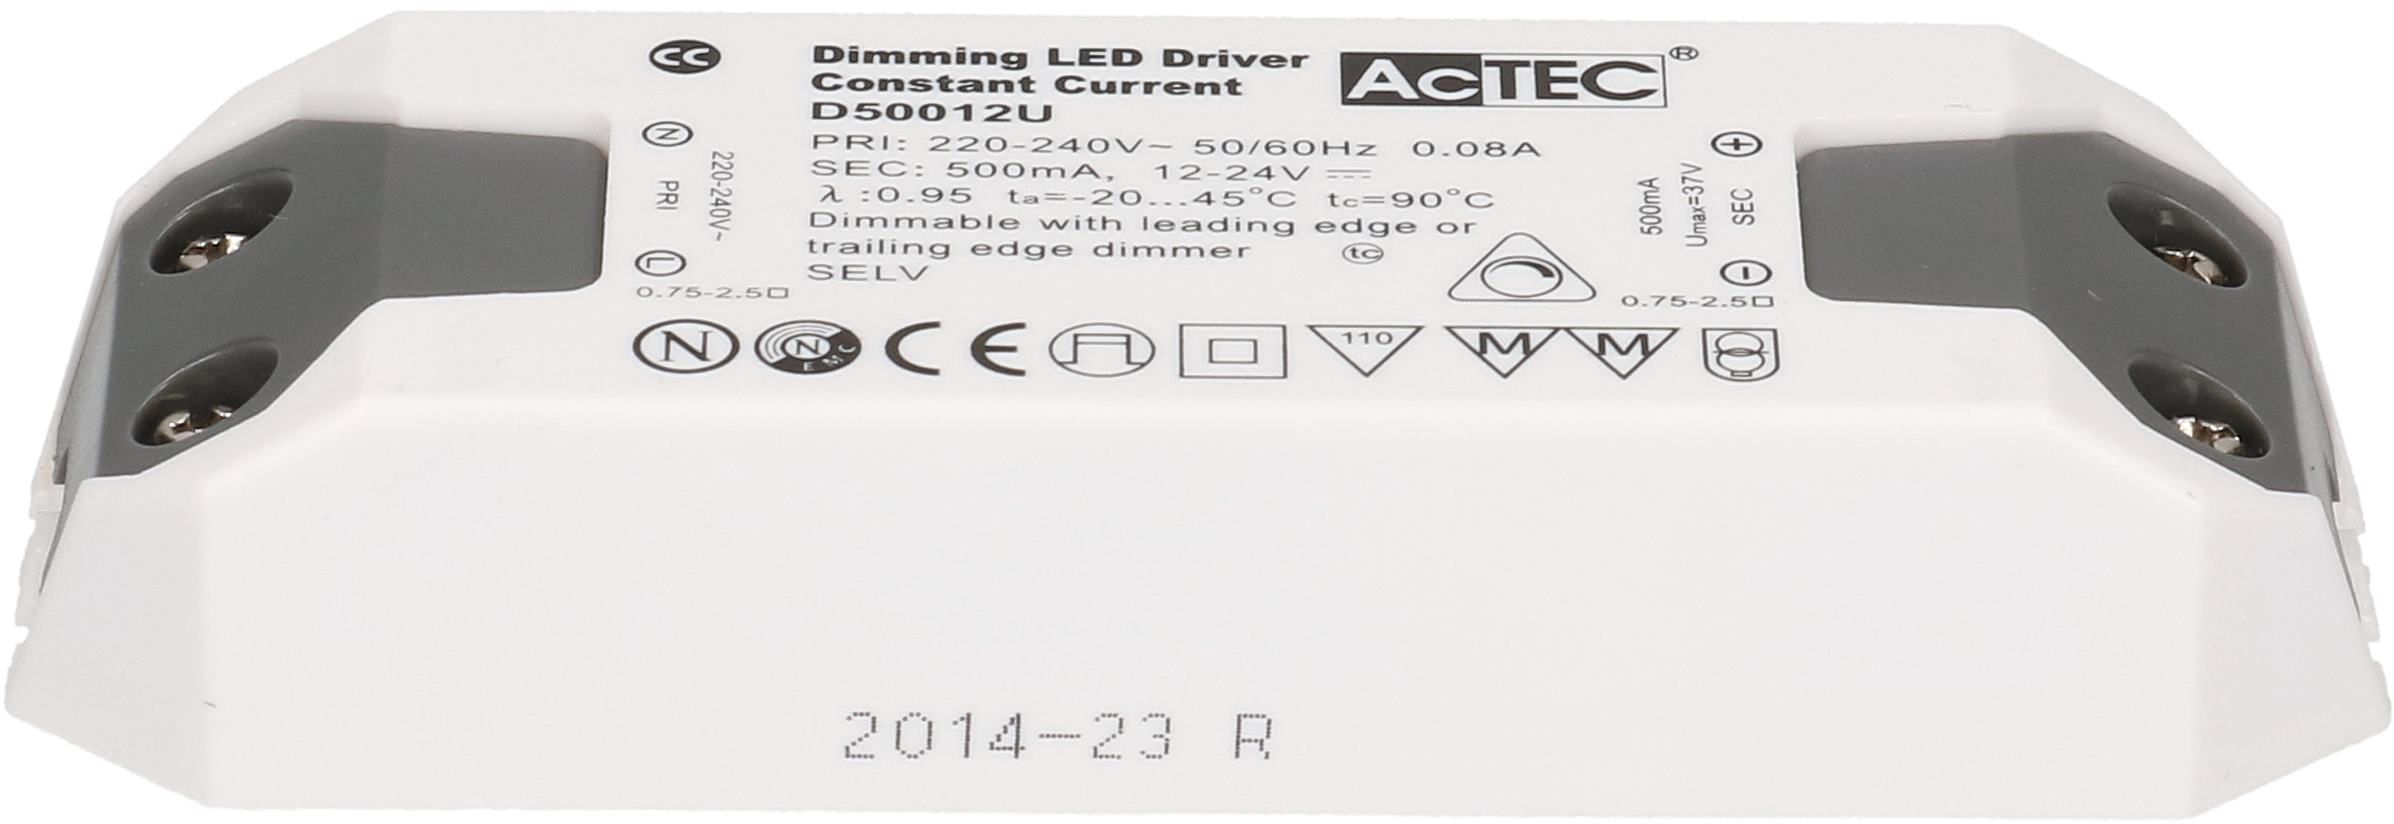 LED-Konstantstromtreiber 500mA 12W